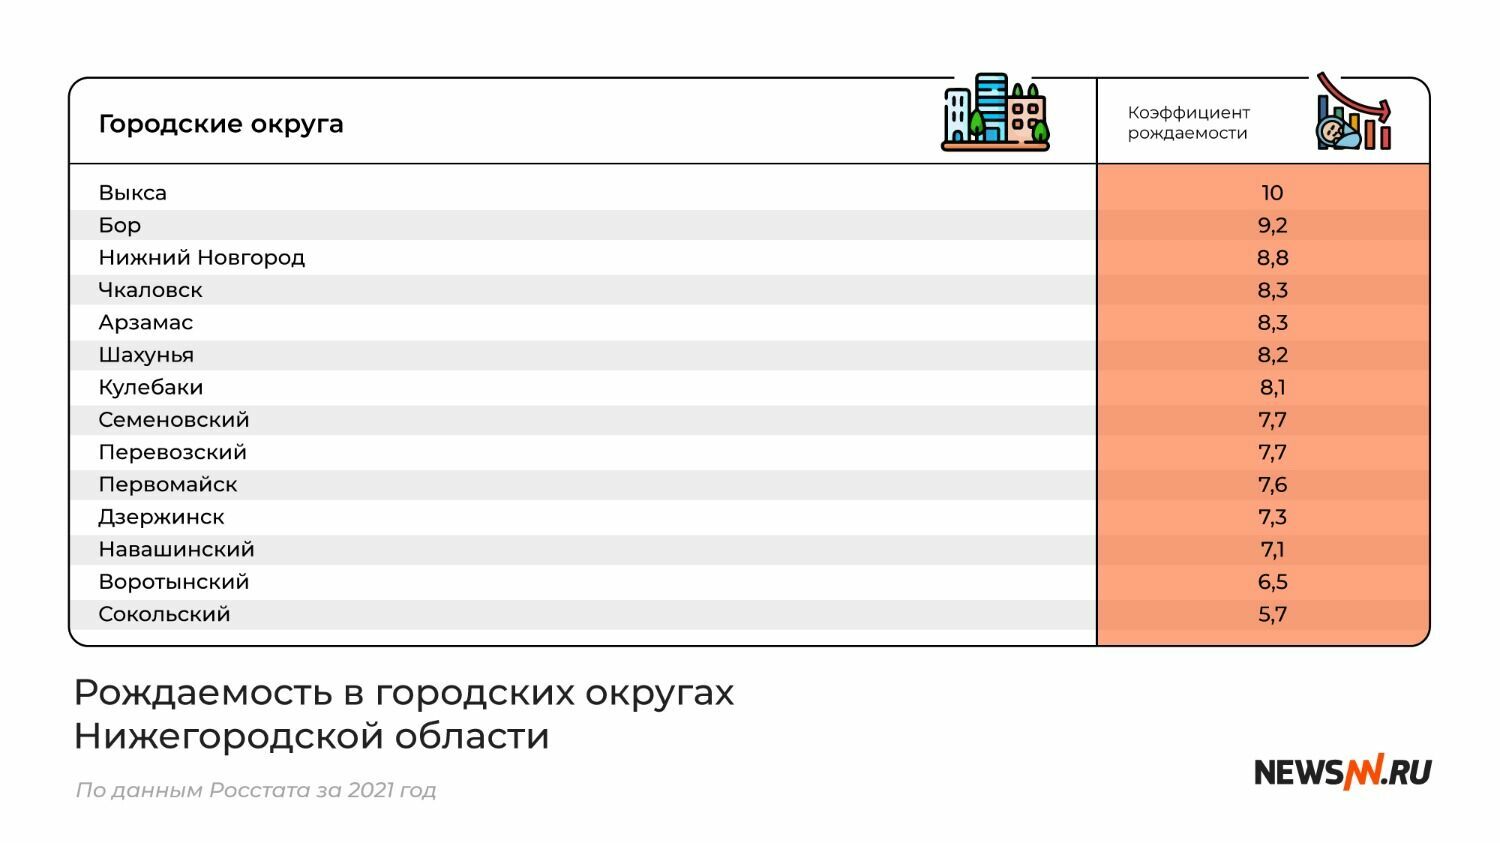 Рейтинг городских округов Нижегородской области по рождаемости